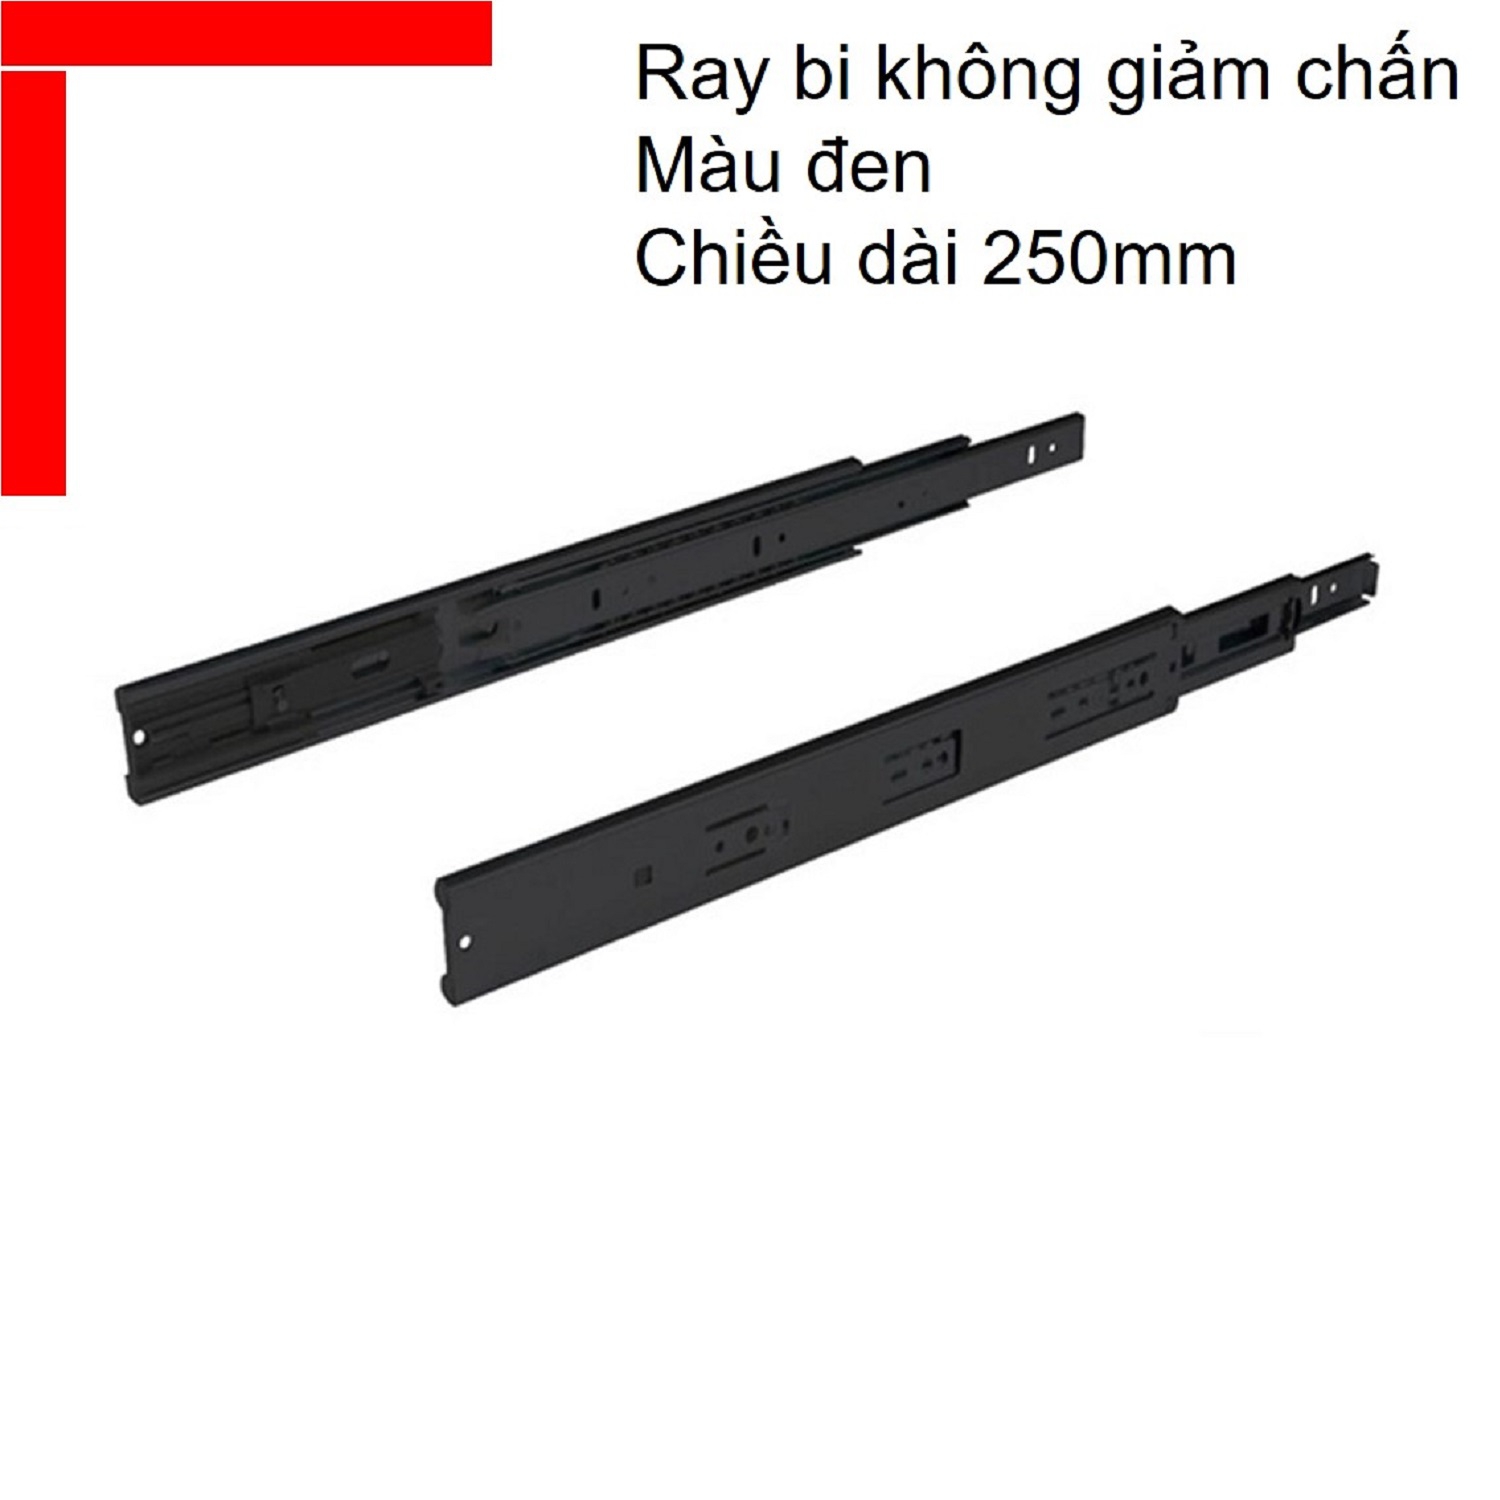 Ray bi không giảm chấn Hafele chiều dài 250mm màu đen 494.02.450